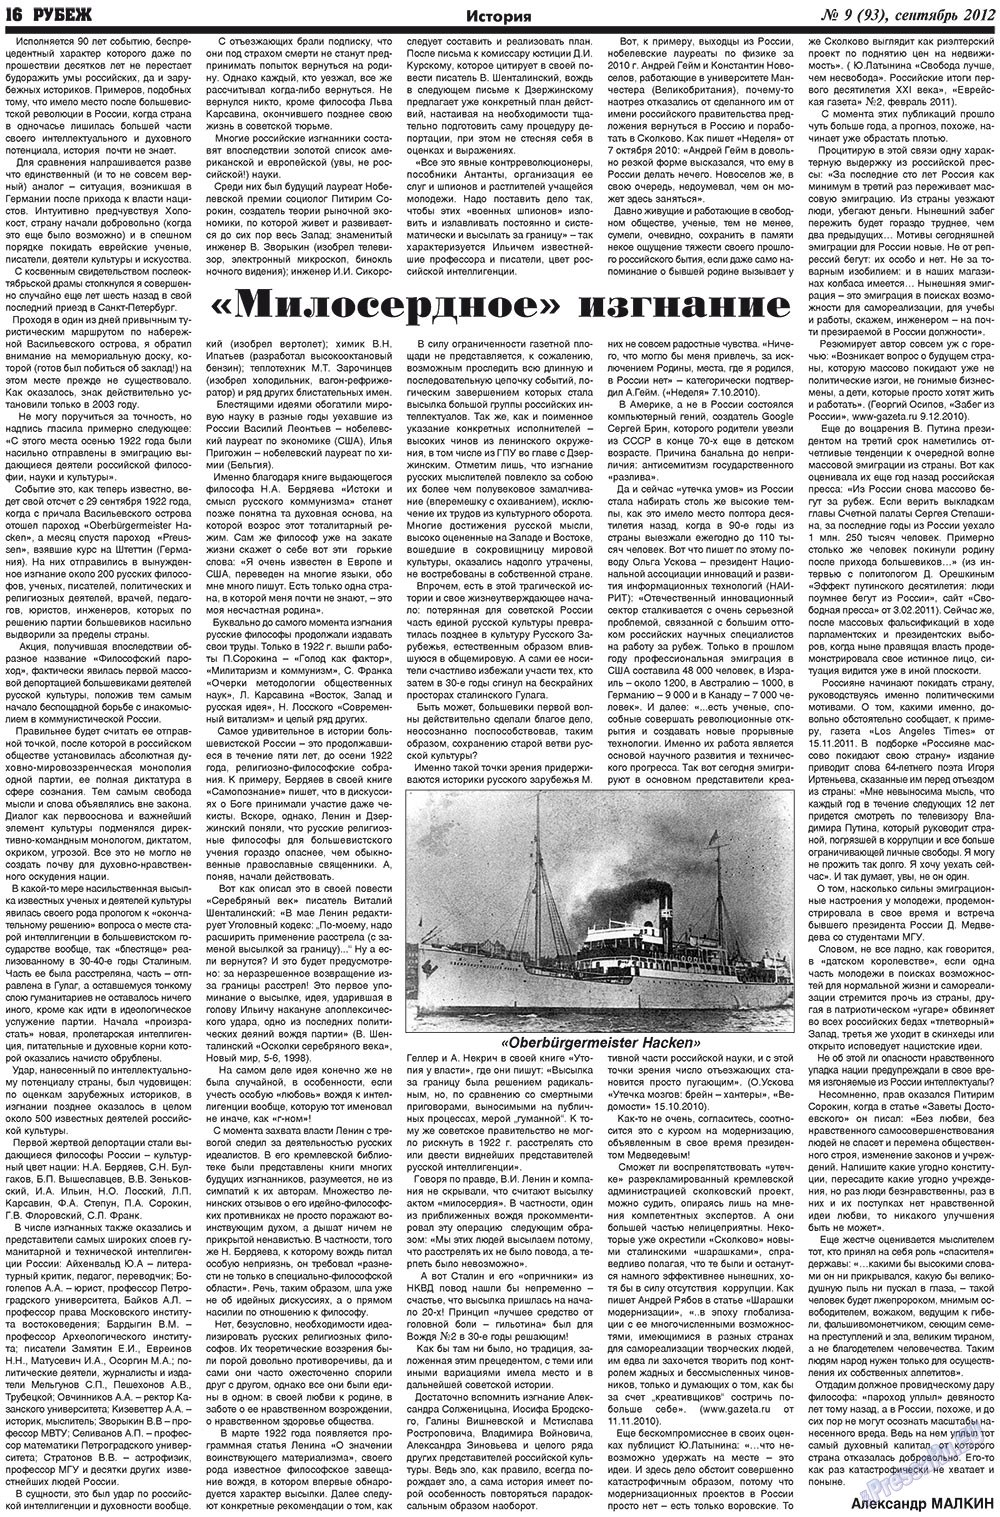 Рубеж (газета). 2012 год, номер 9, стр. 16